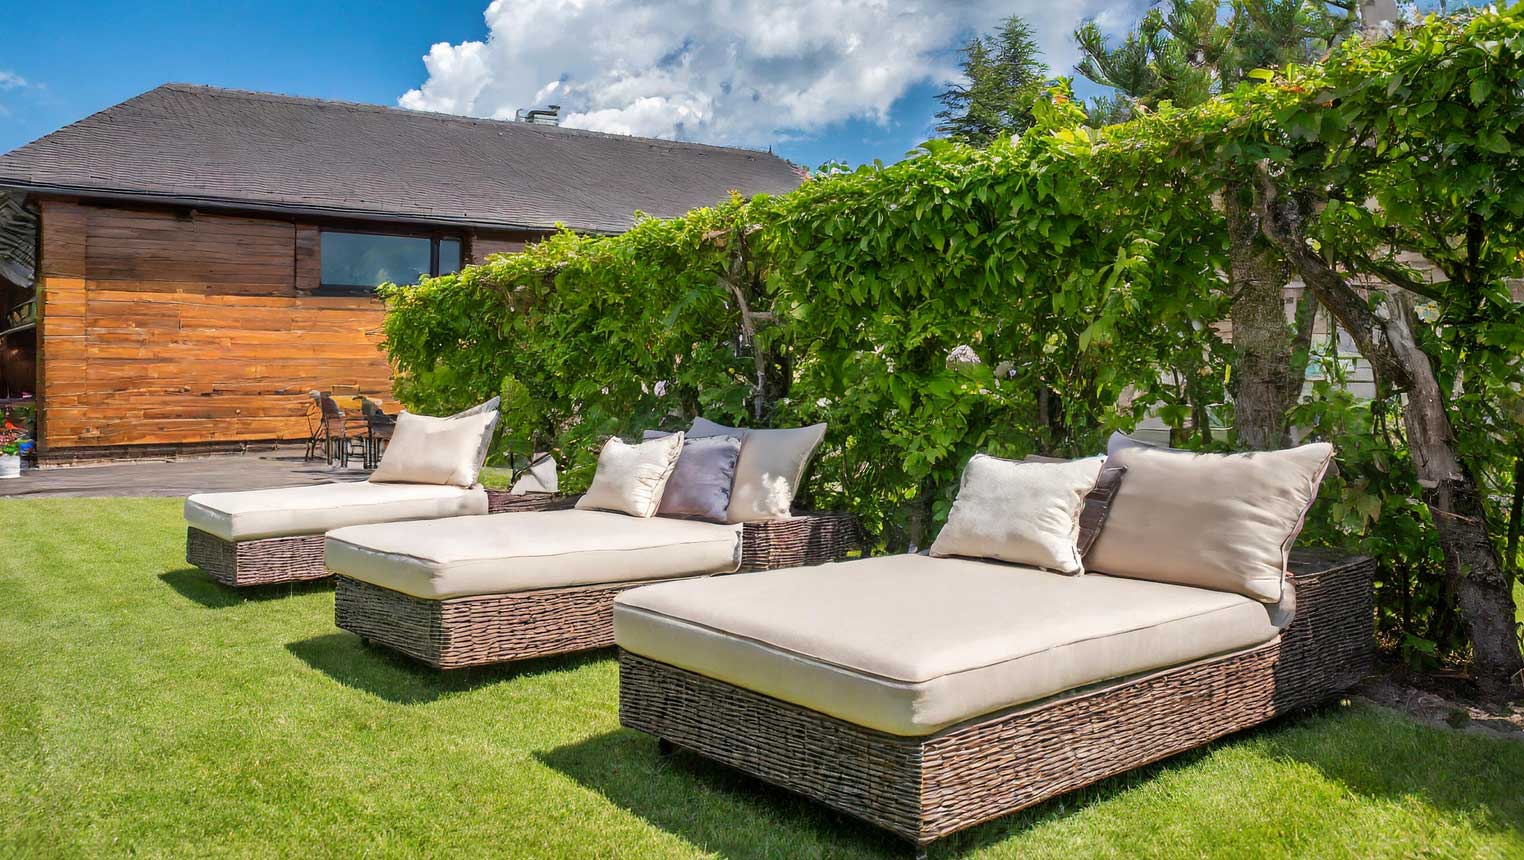 Utemöbler Mio är en produktkategori från möbelkedjan Mio som erbjuder ett brett sortiment av möbler designade för utomhusbruk, såsom trädgårdsstolar, bord och loungeset.